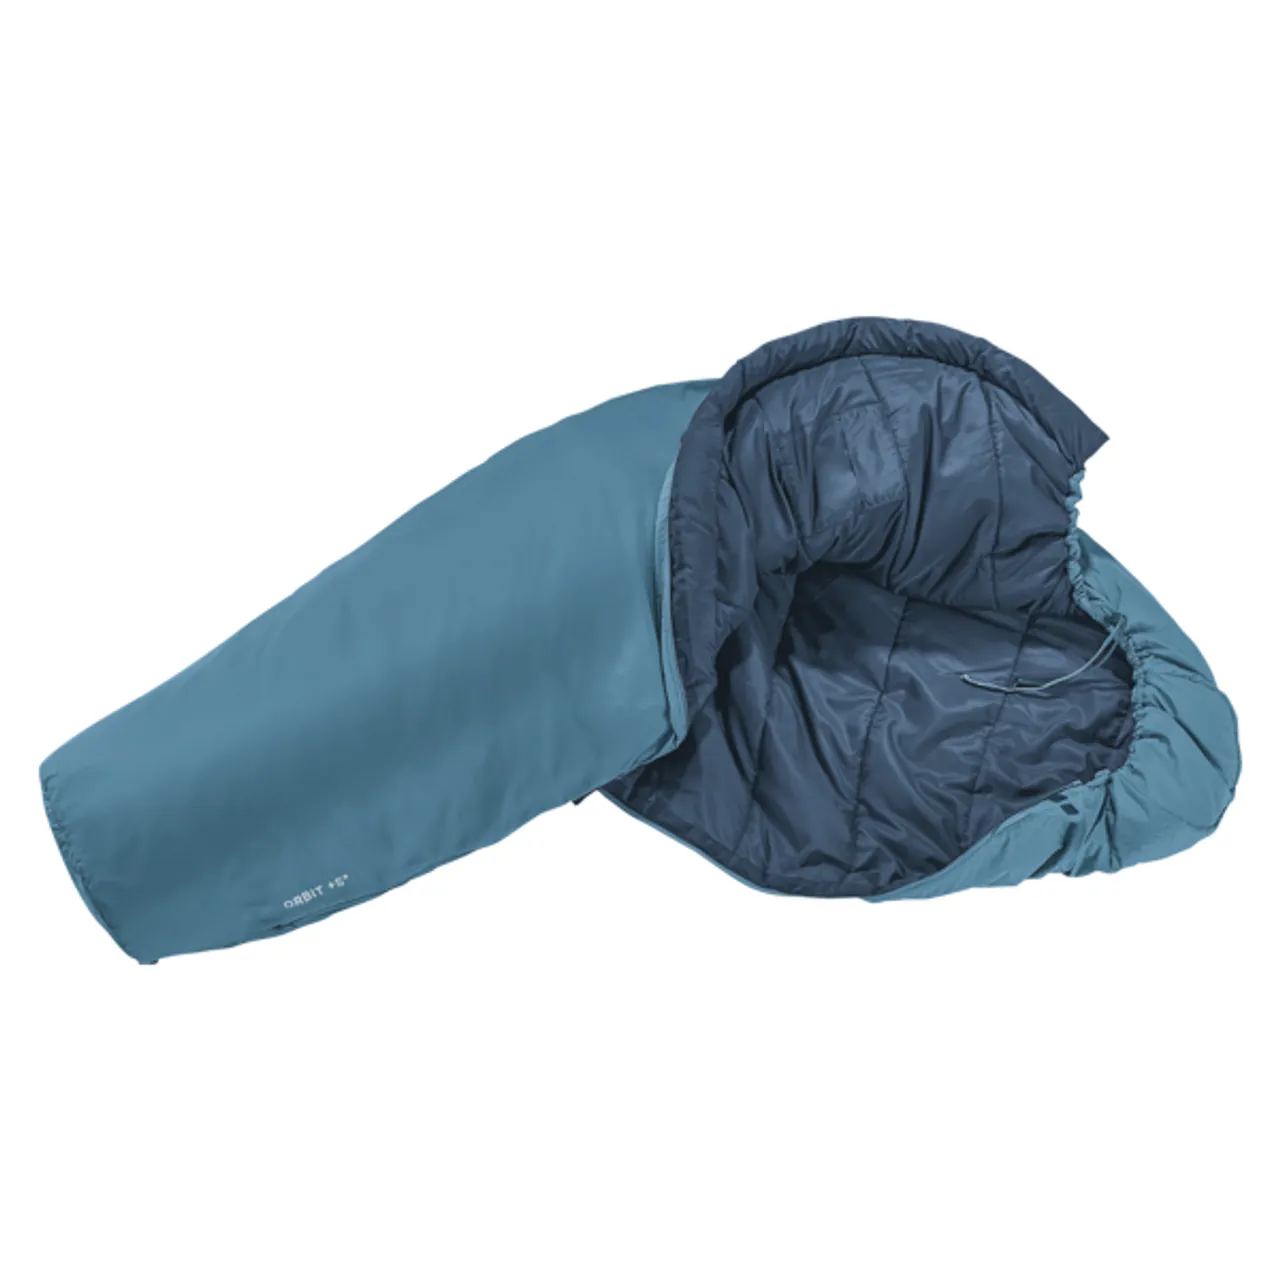 Schlafsack DEUTER "Orbit +5" Schlafsäcke Gr. B/L: 74 cm x 208 cm, mit Reißverschluss, blau (atlantic, ink) Schlafsäcke